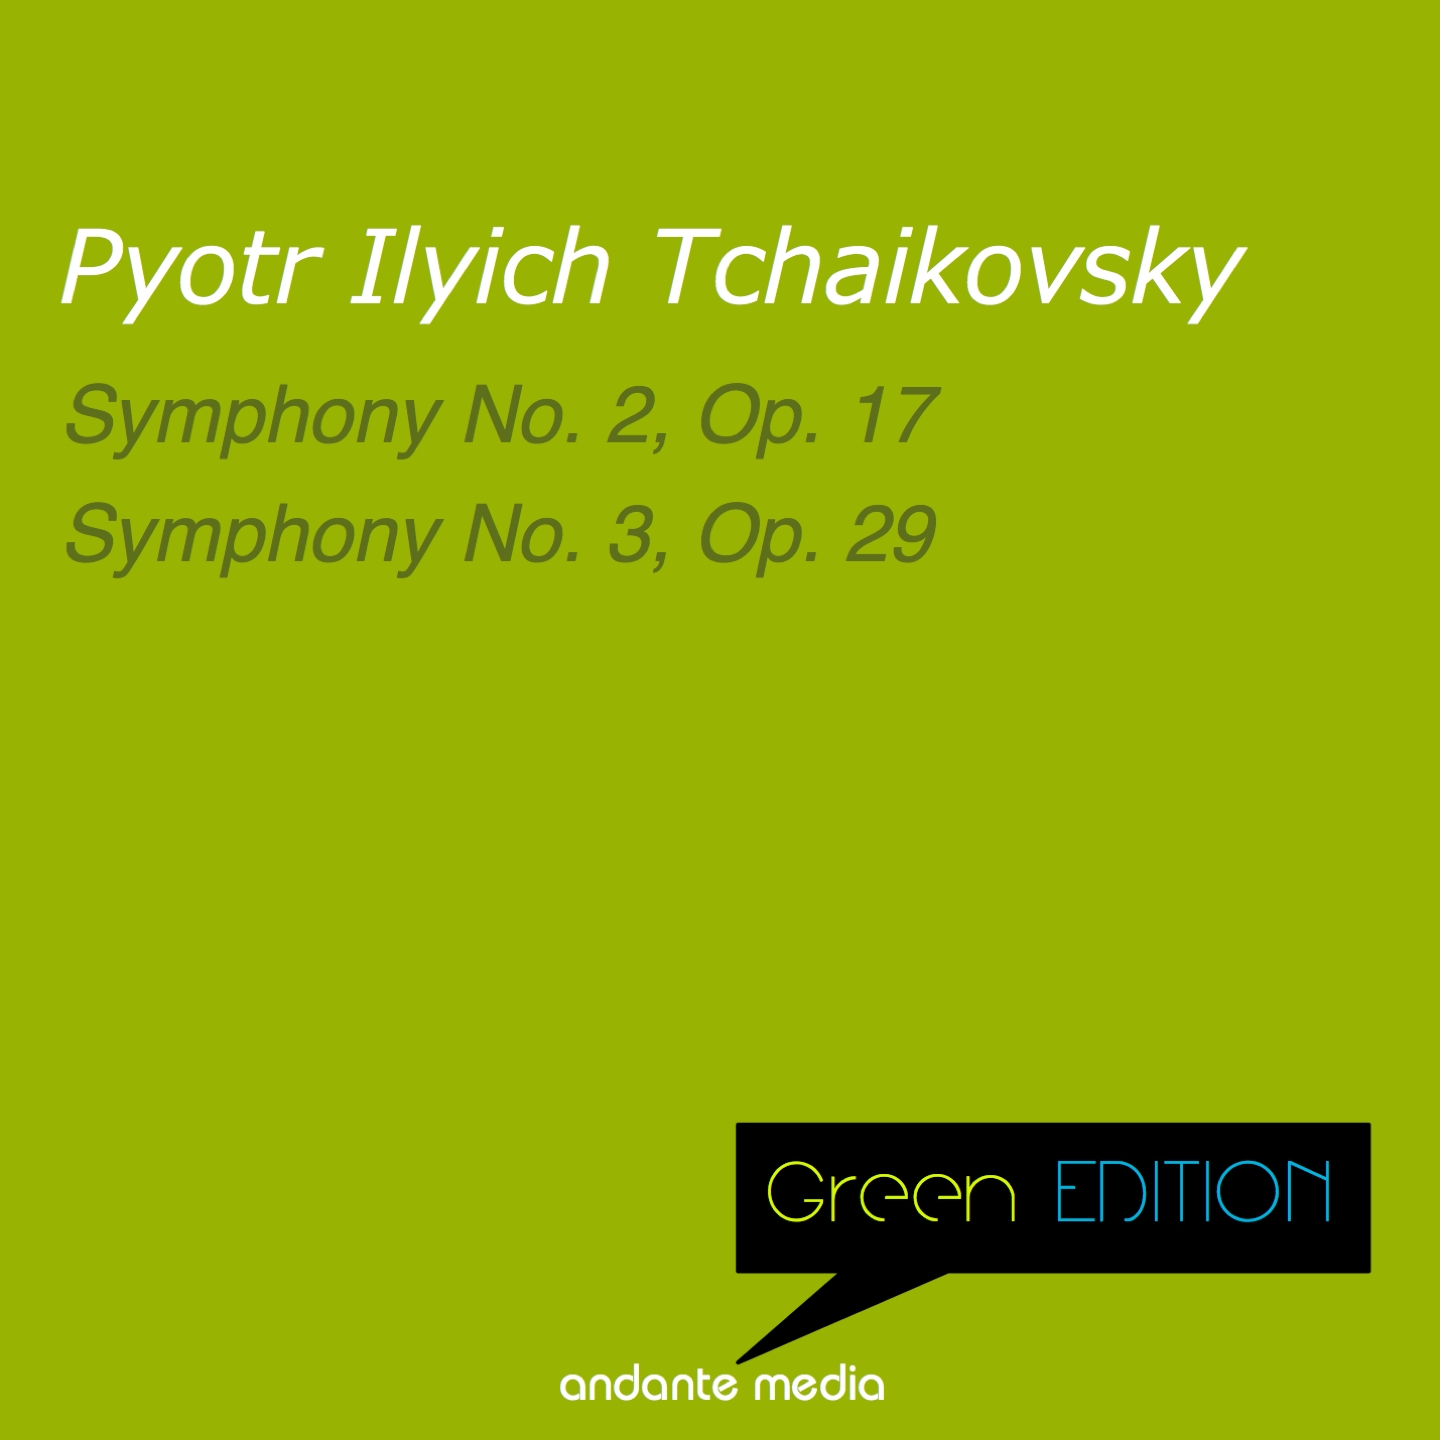 Symphony No. 3 in D Major, Op. 29, TH 26 "Polish": V. Finale. Allegro con fuoco